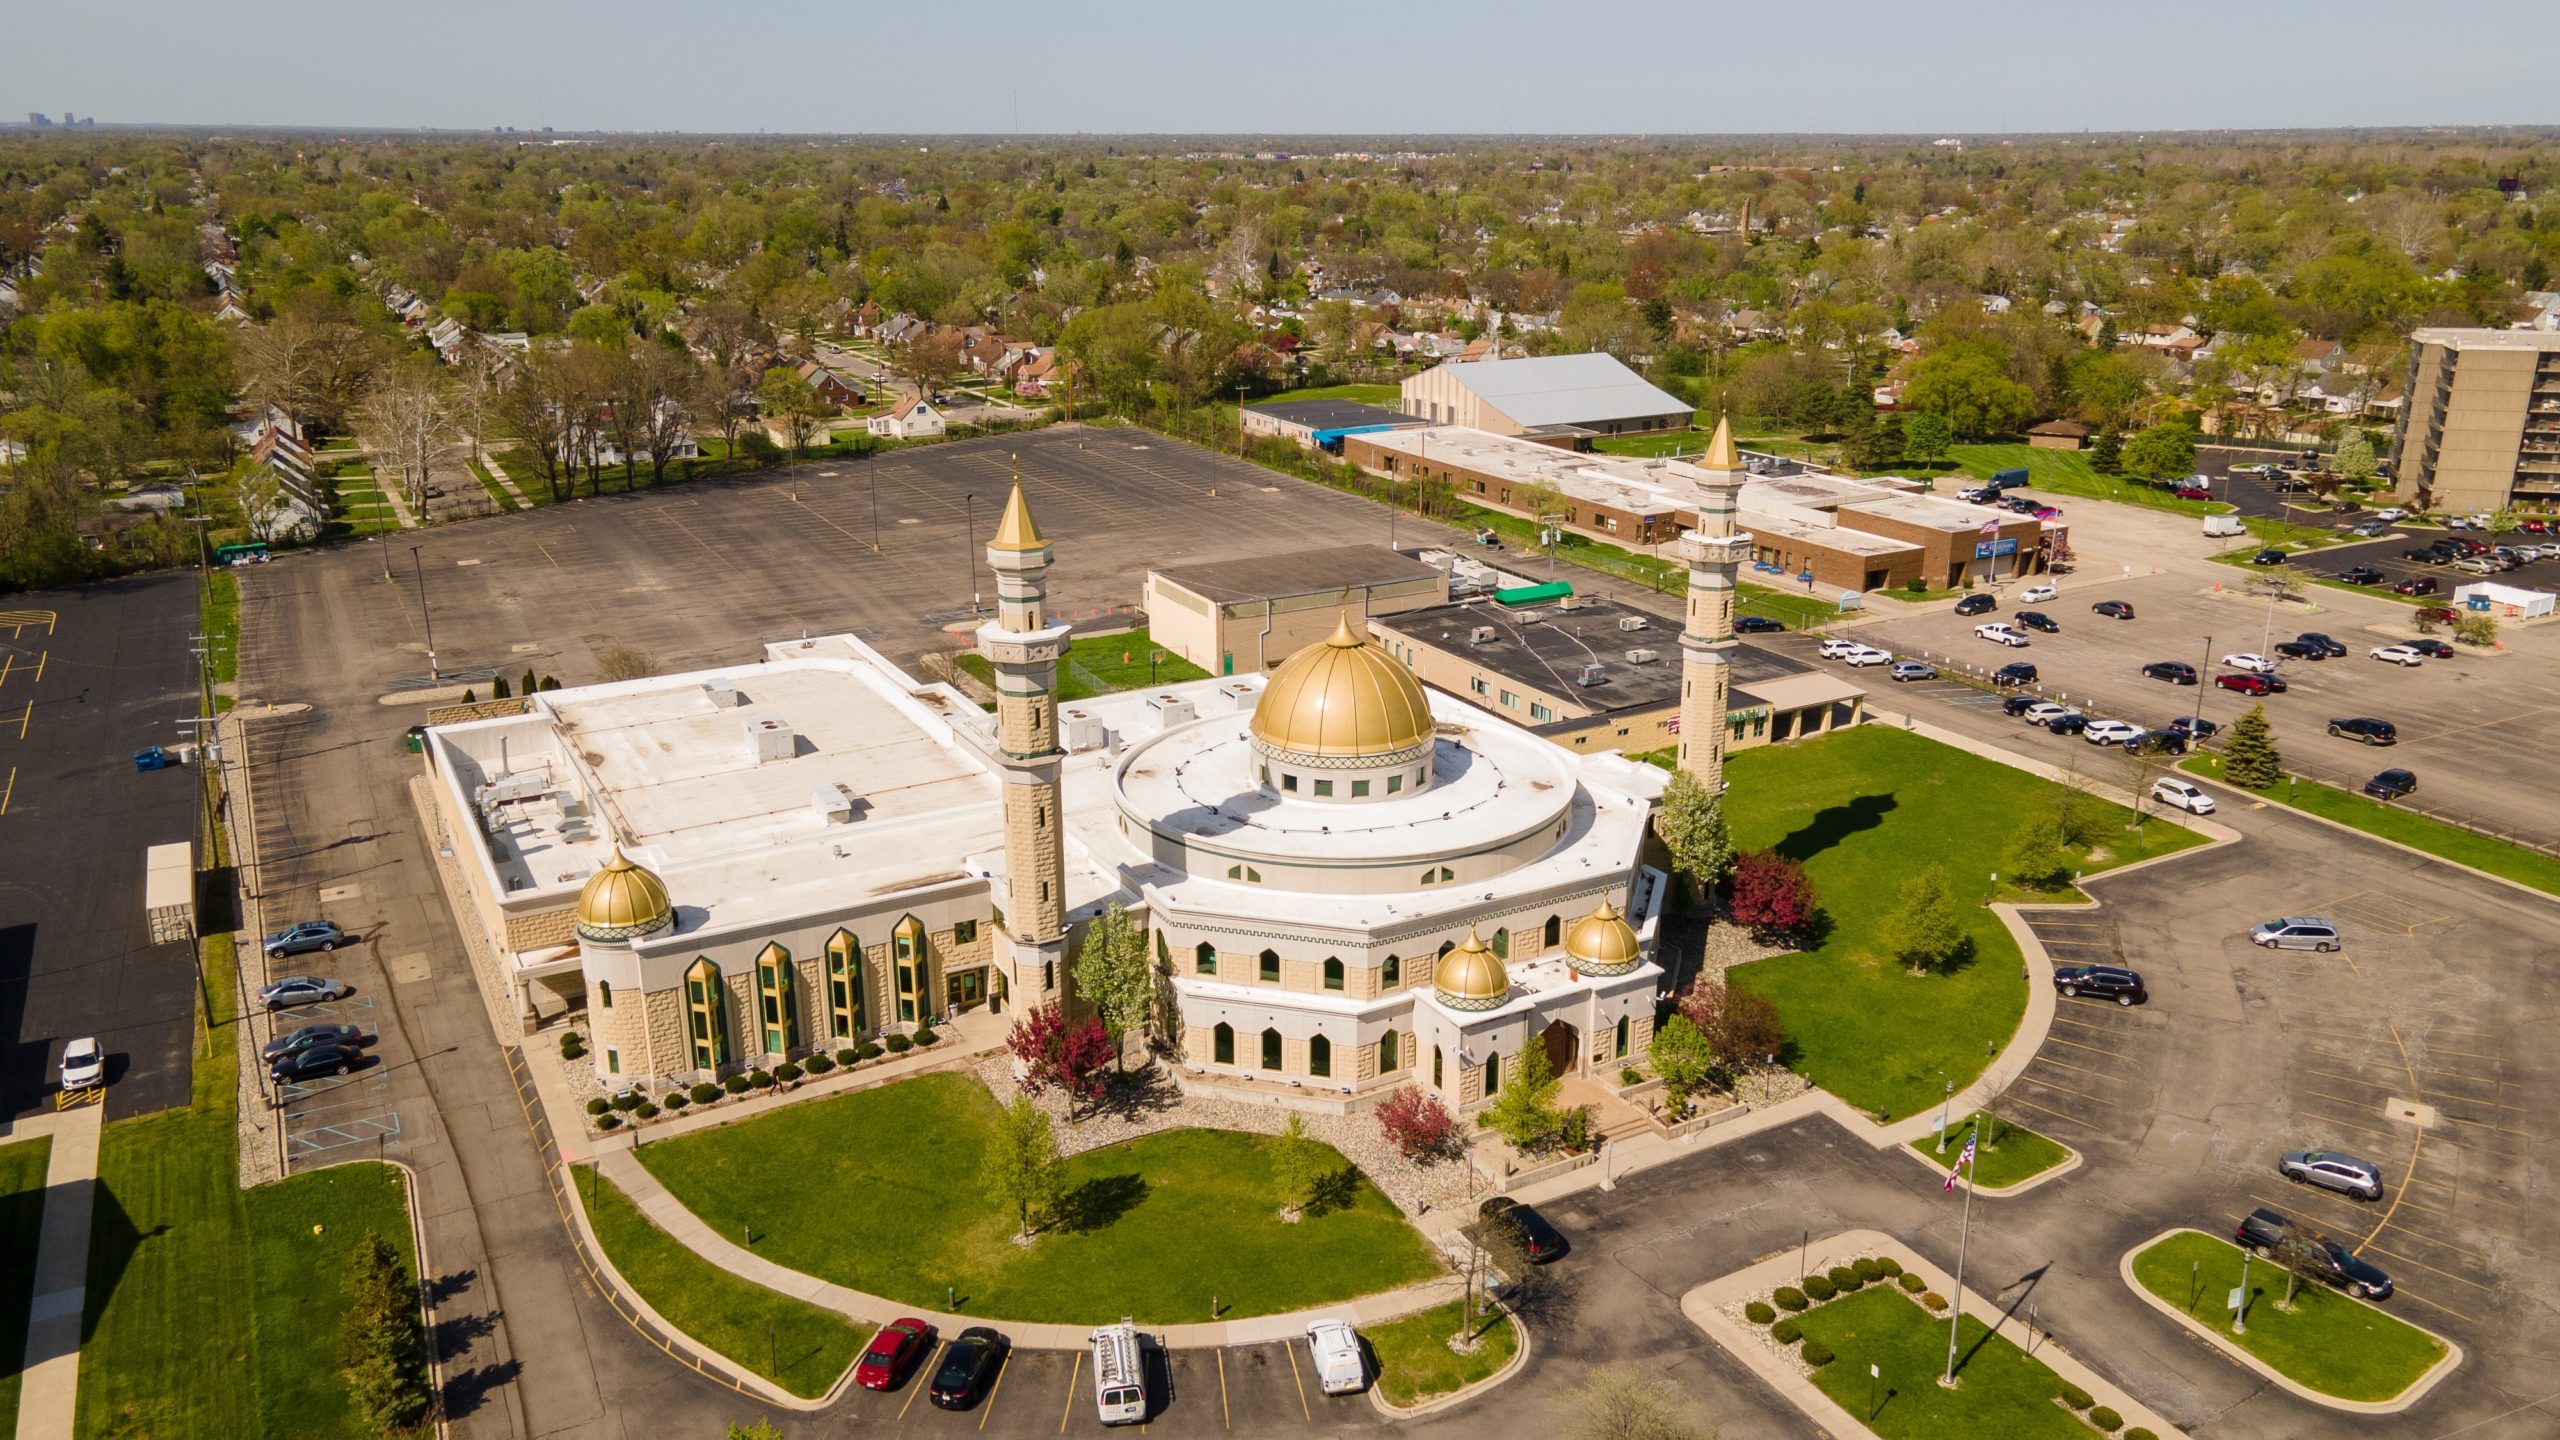 Minneapolis consente sempre le chiamate di preghiera dalle moschee – Documento